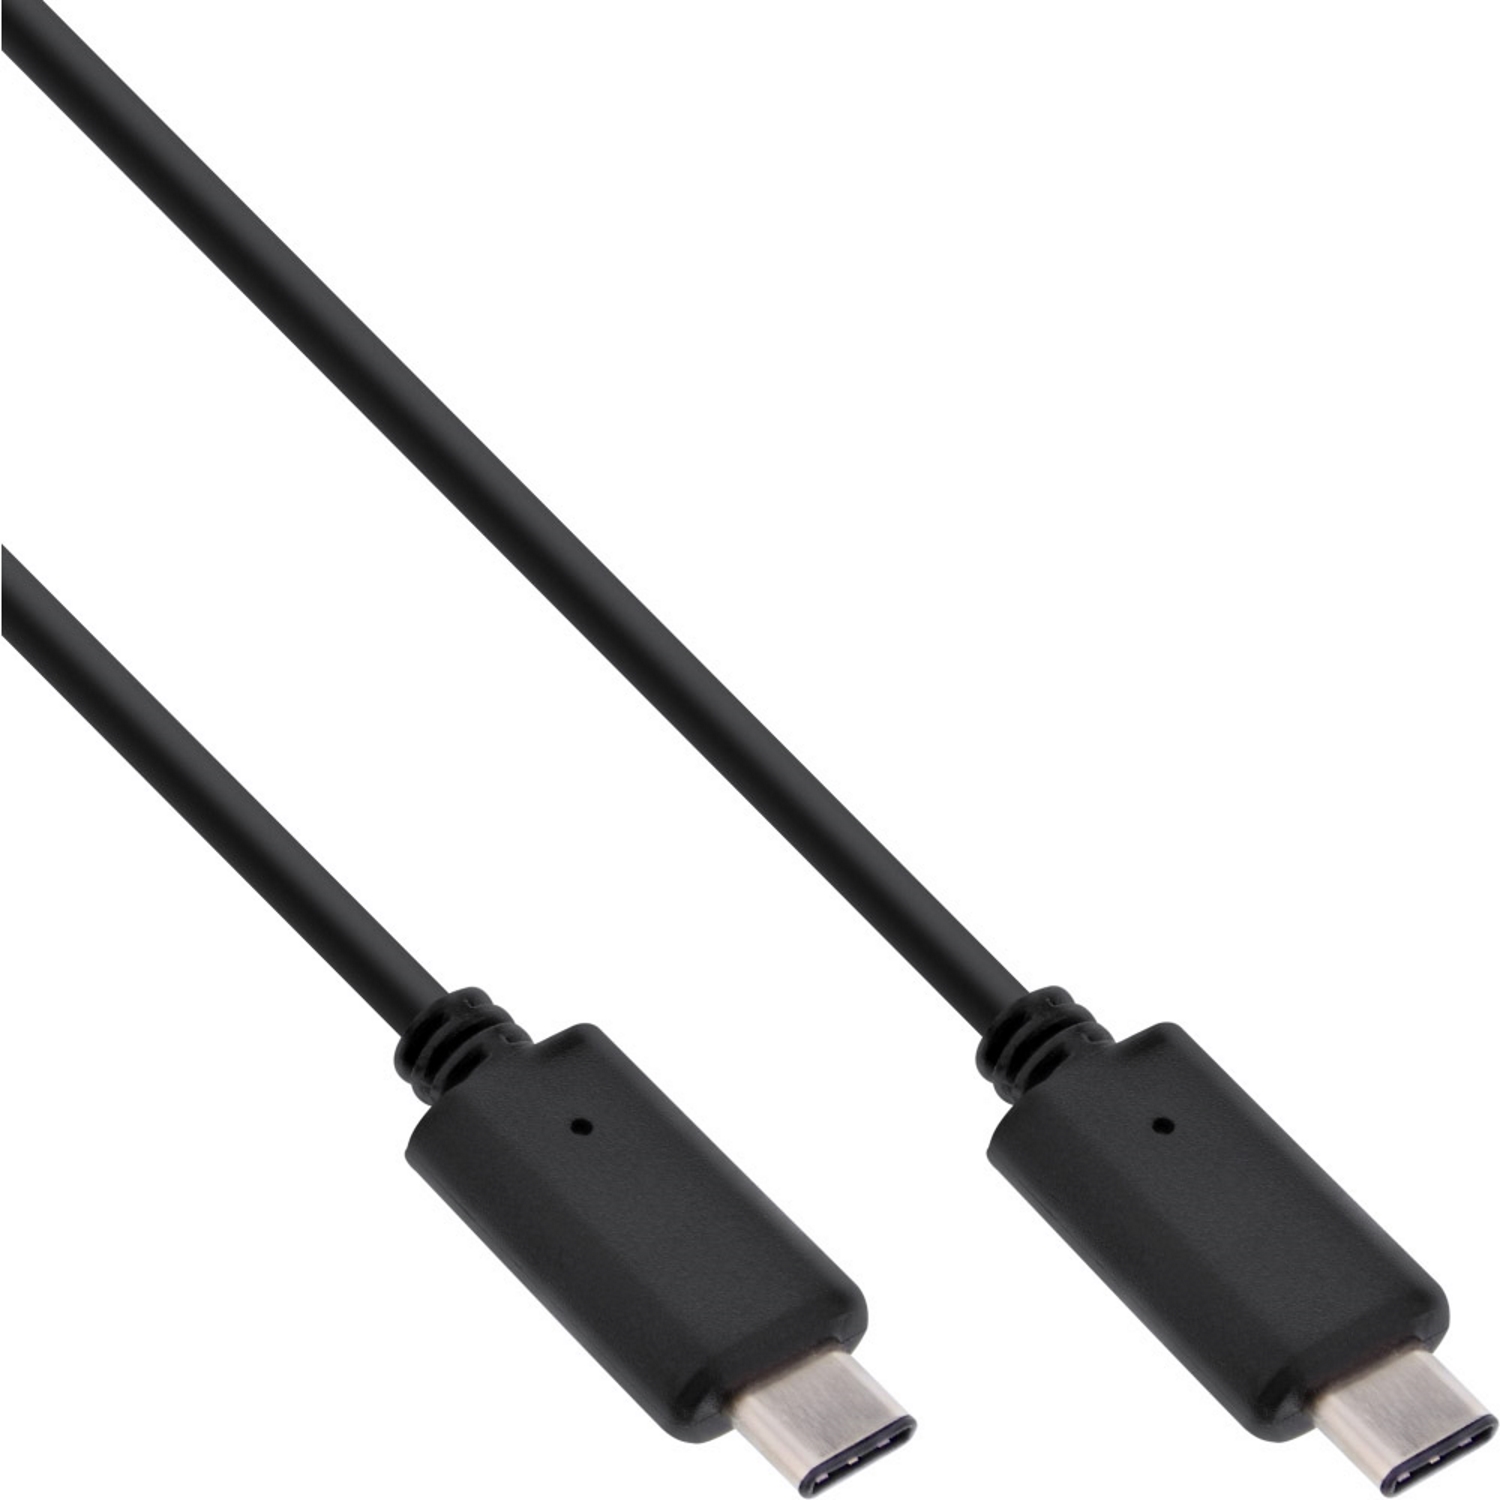 USB 4.0 cable, 2m, C-St./C-St.